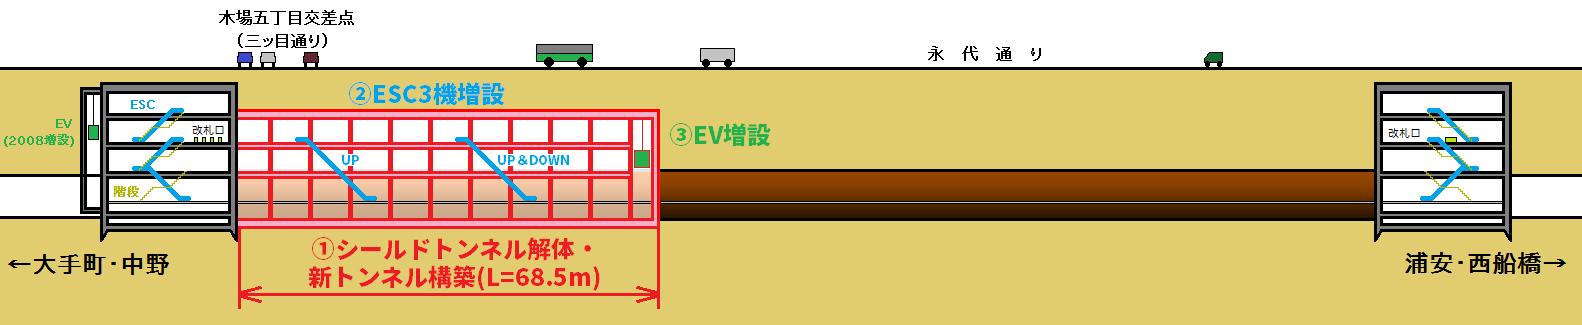 木場駅改良工事のイメージ図。赤い部分がシールドトンネルを解体して新規に構築する部分。